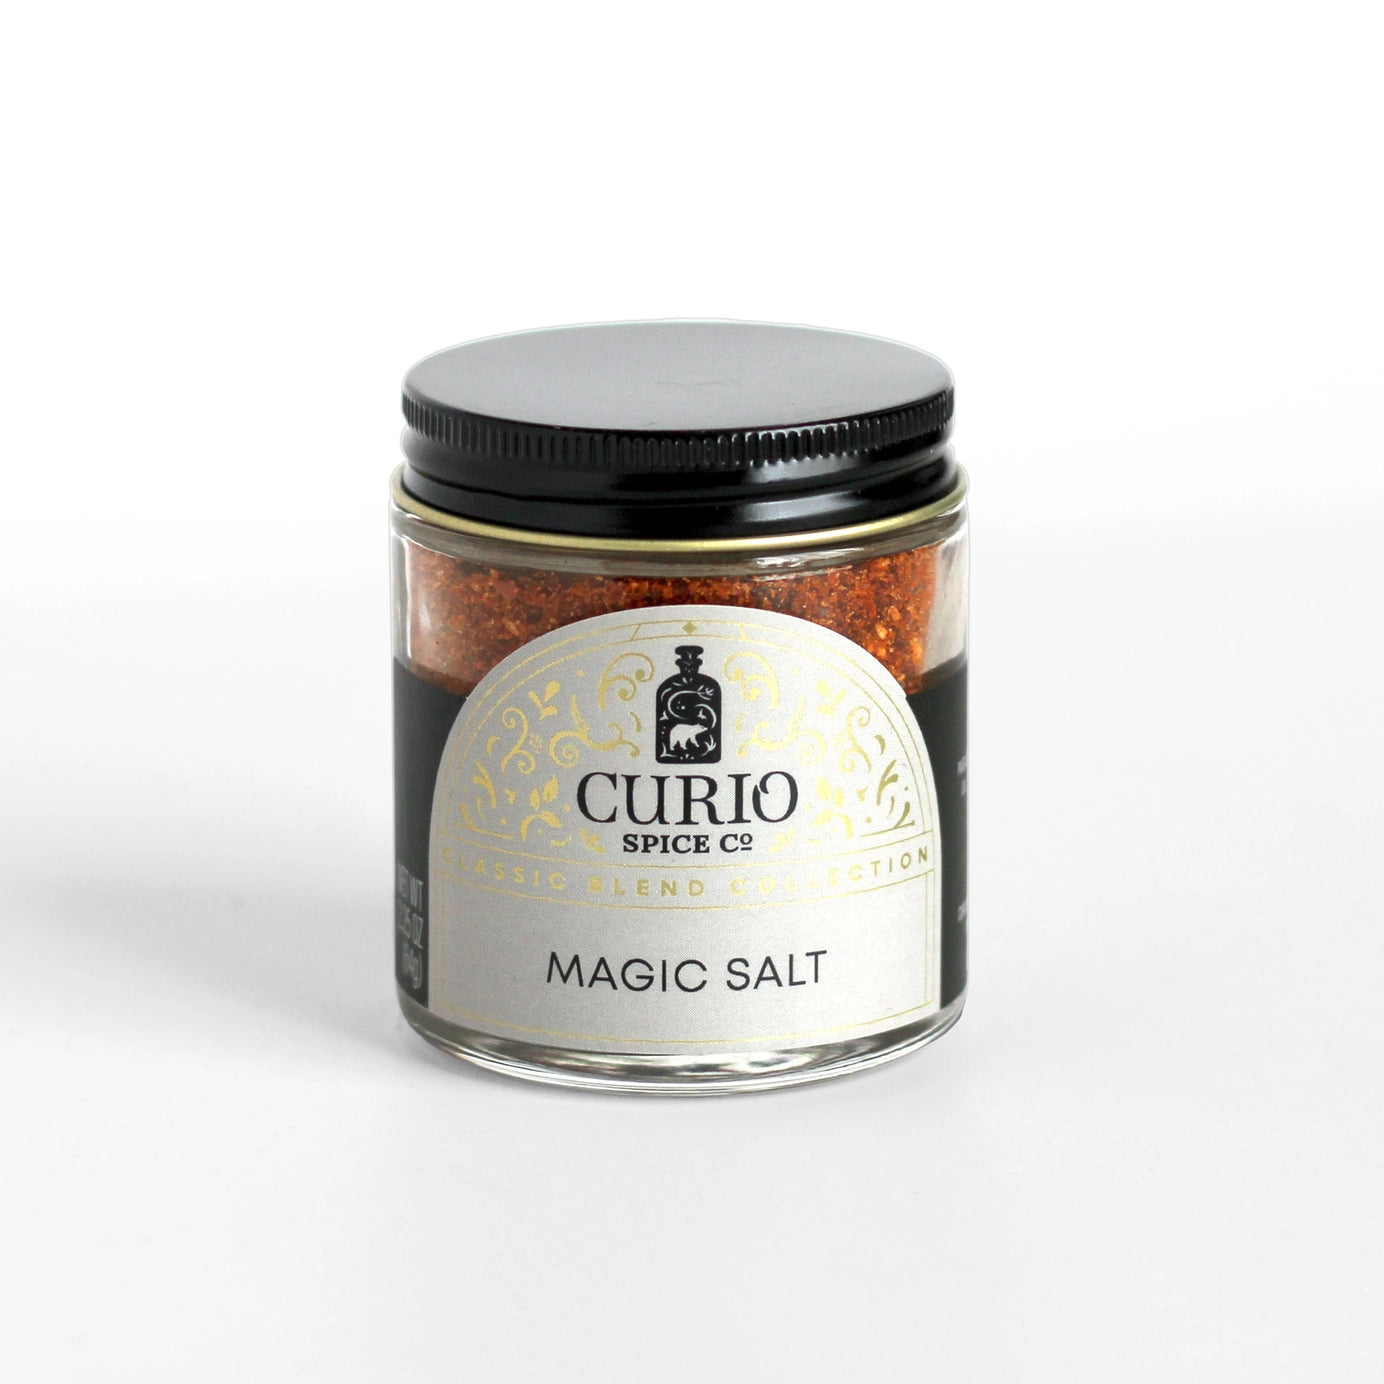 Curio Spice Co Magic Salt in a glass jar.